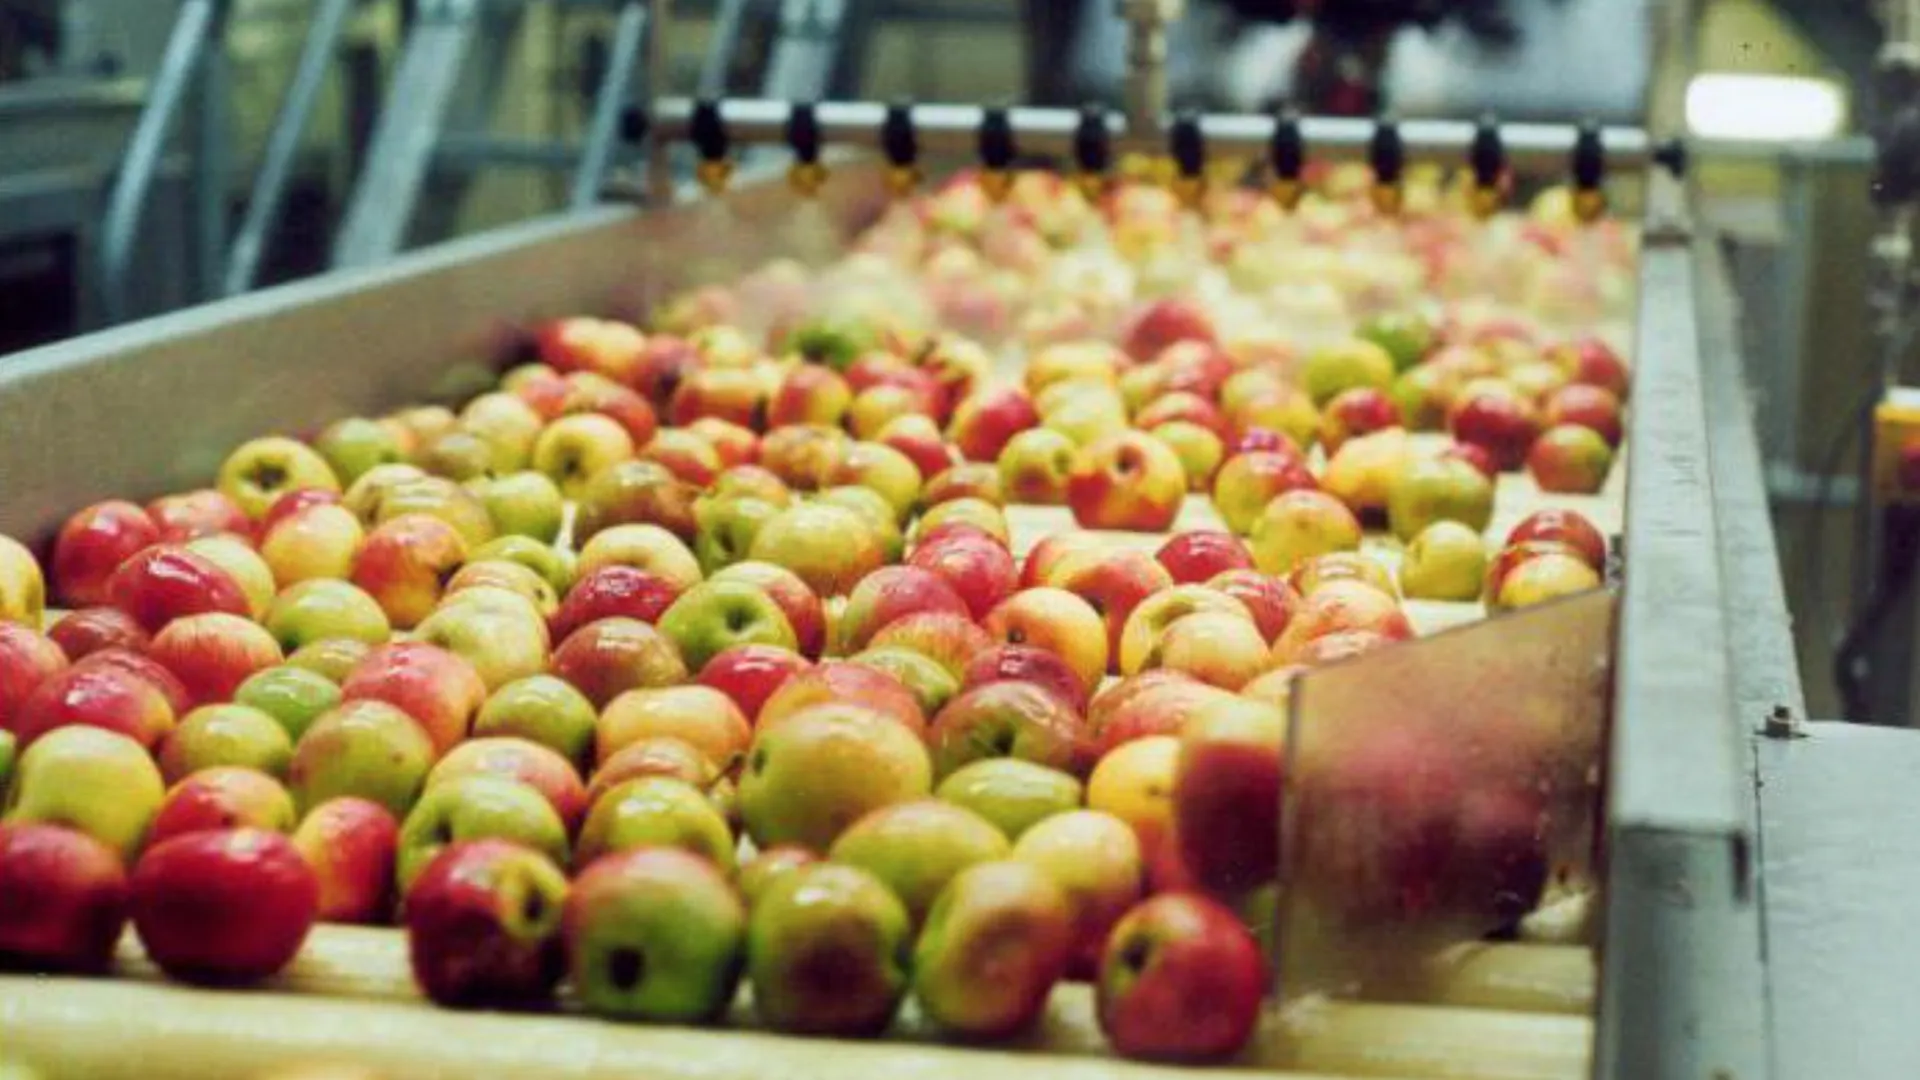 Негазированные яблочные напитки начнут производить в Шаховской